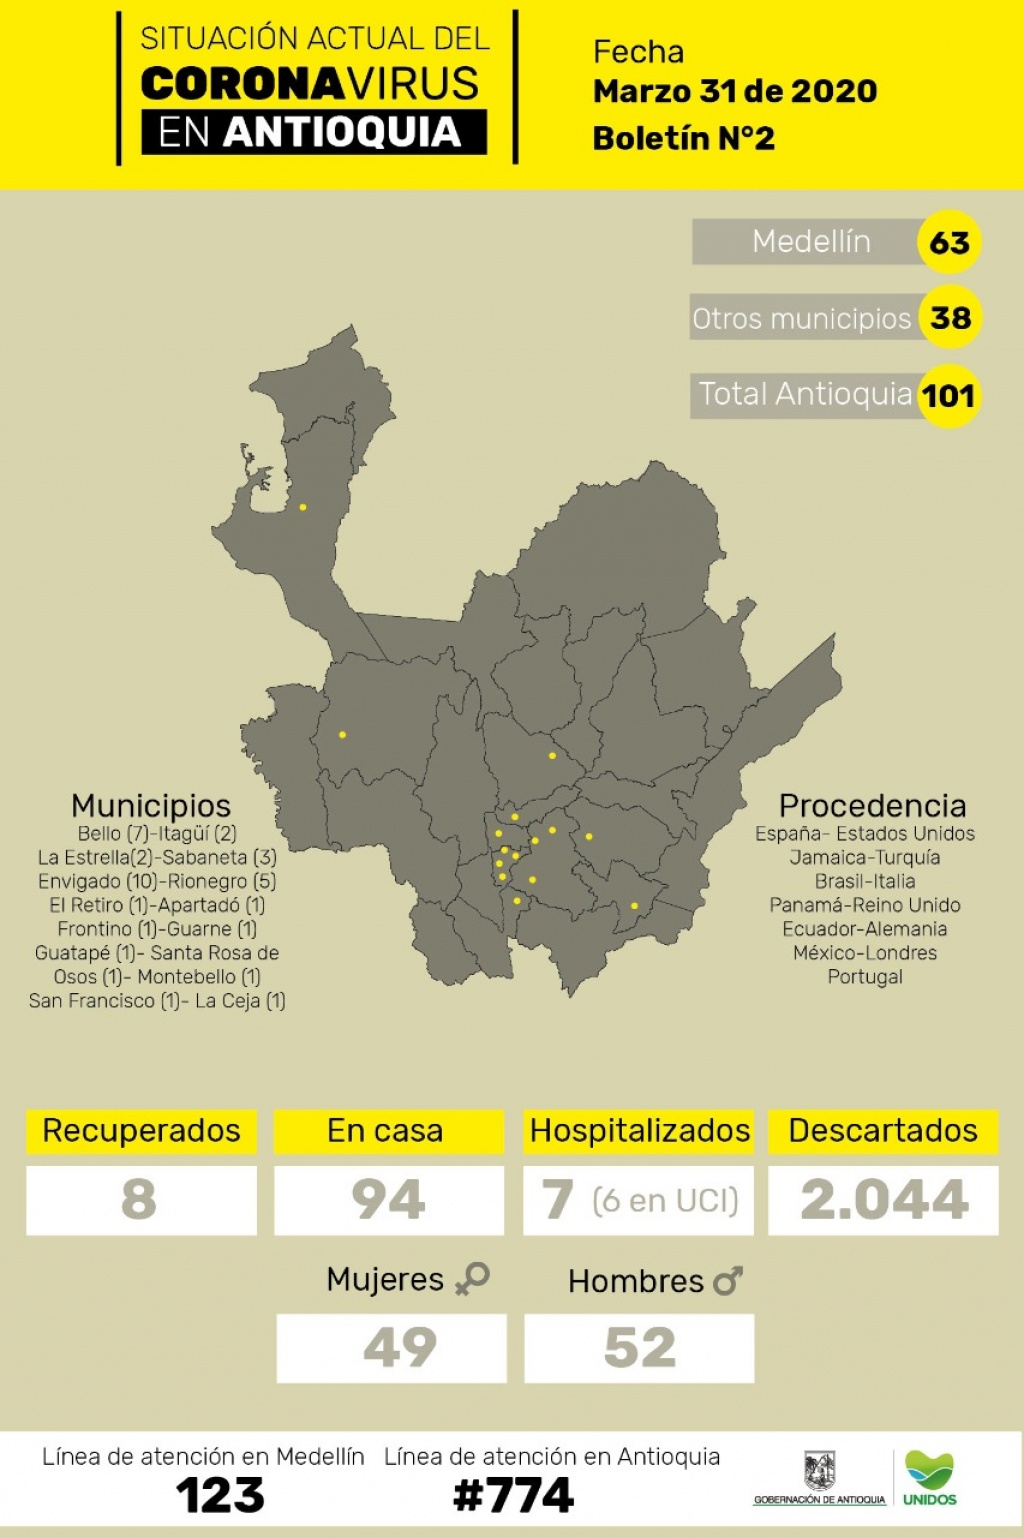 Asciende a 8 la cifra de recuperados en el departamento de Antioquia